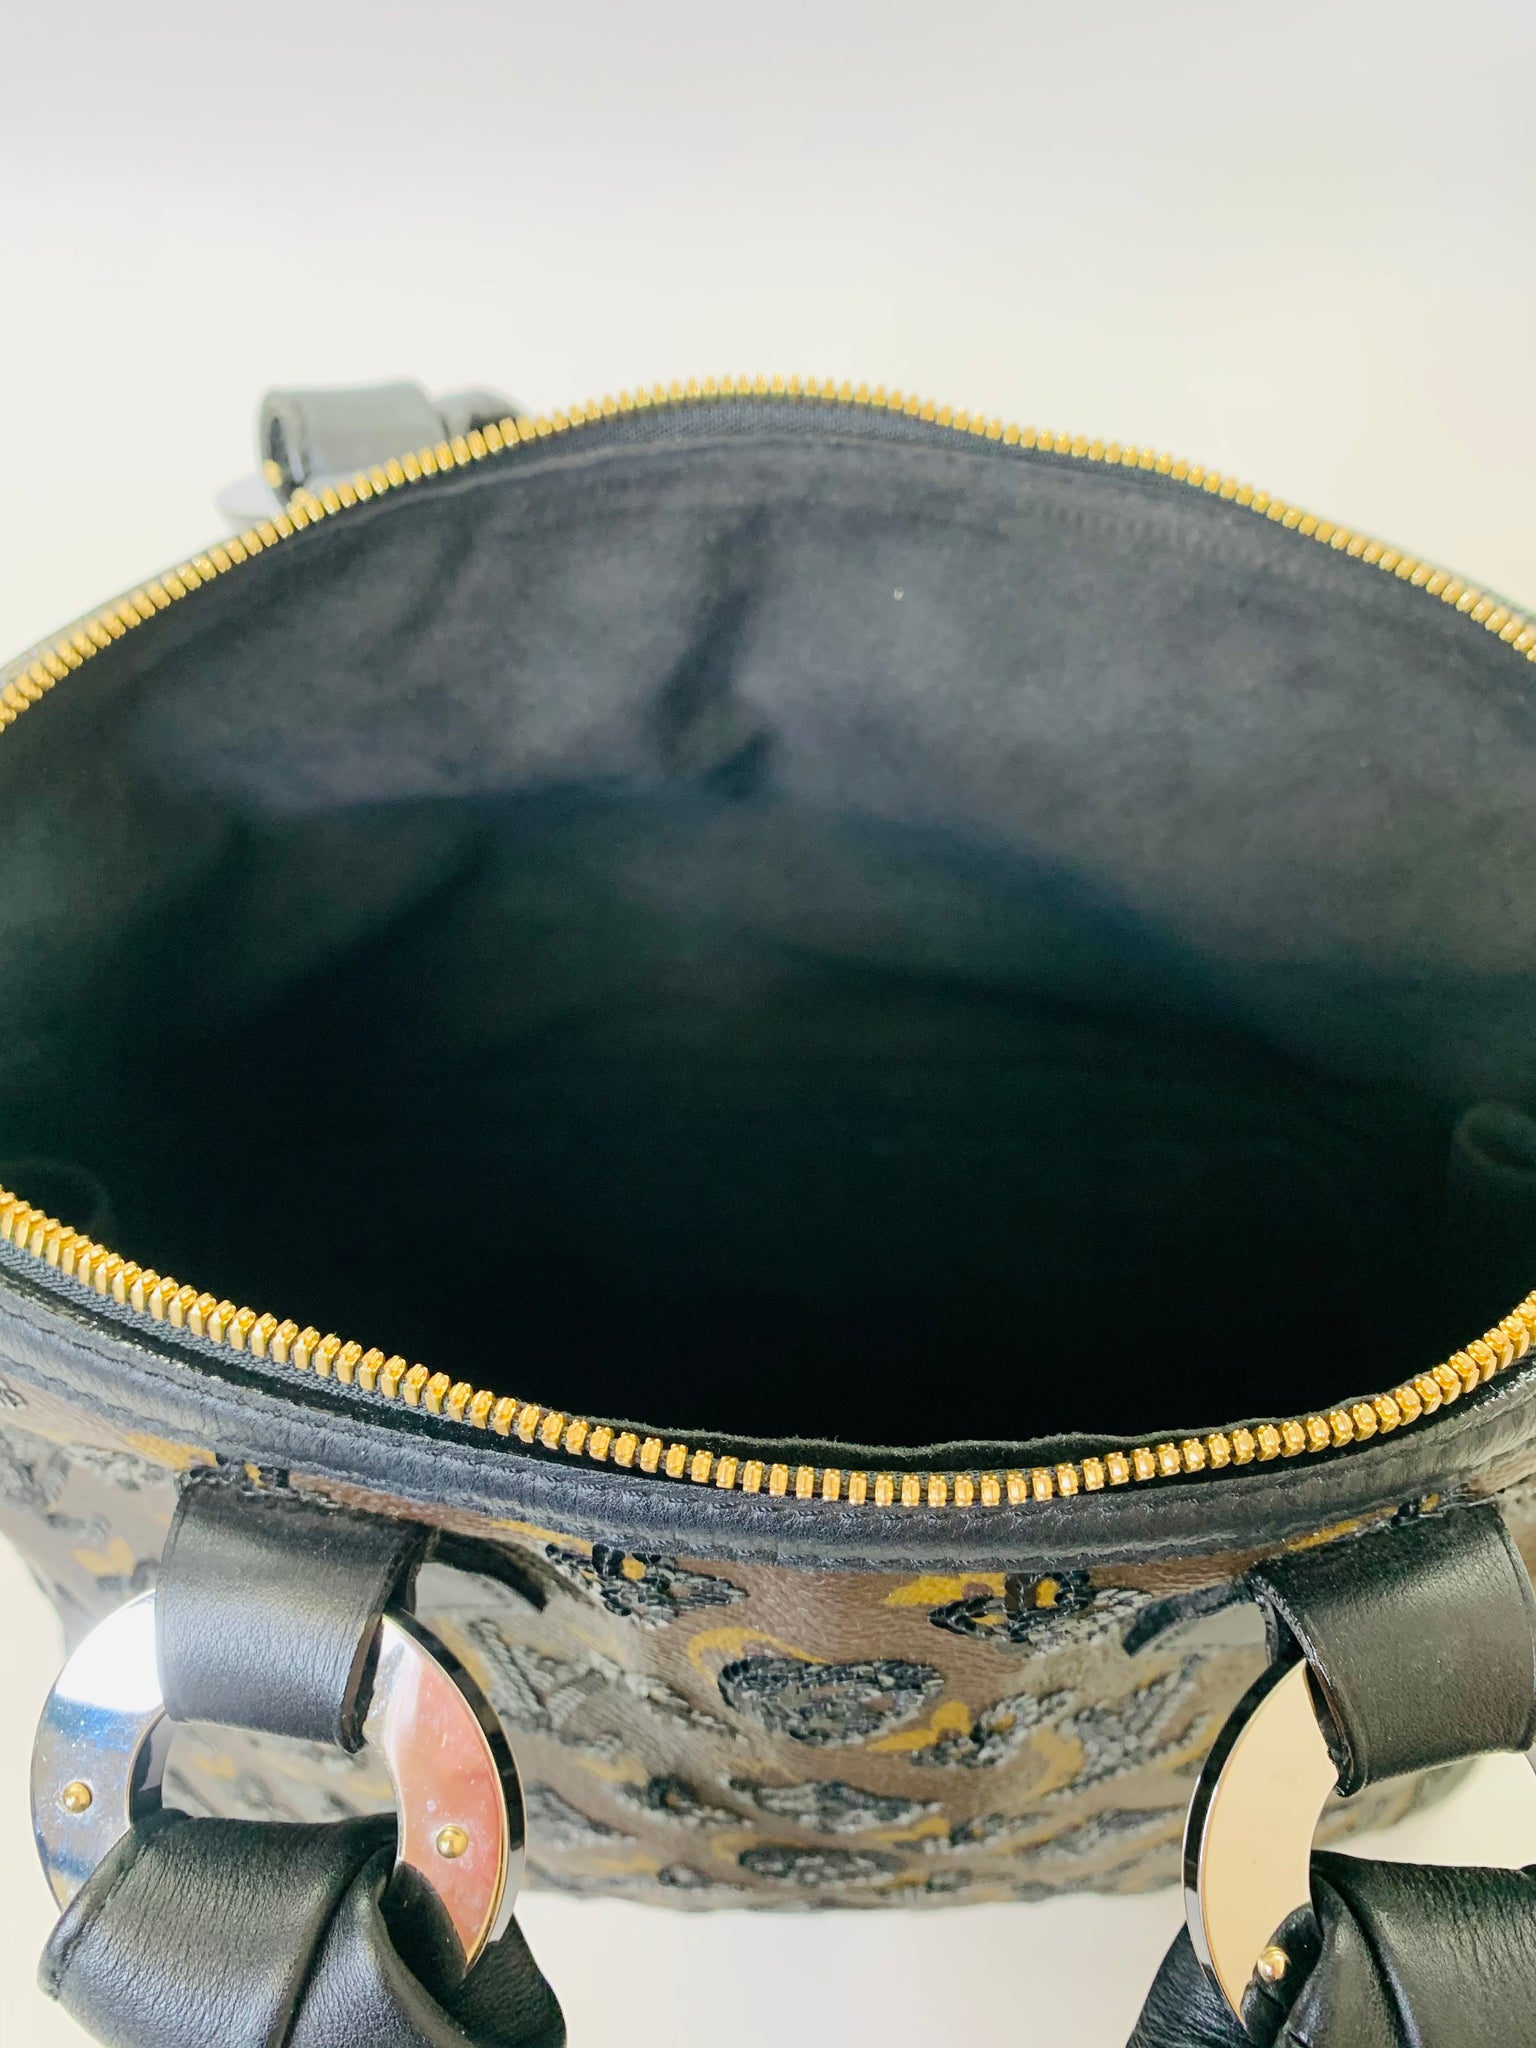 Louis Vuitton Alma Handbag Limited Edition Monogram Eclipse Sequins PM